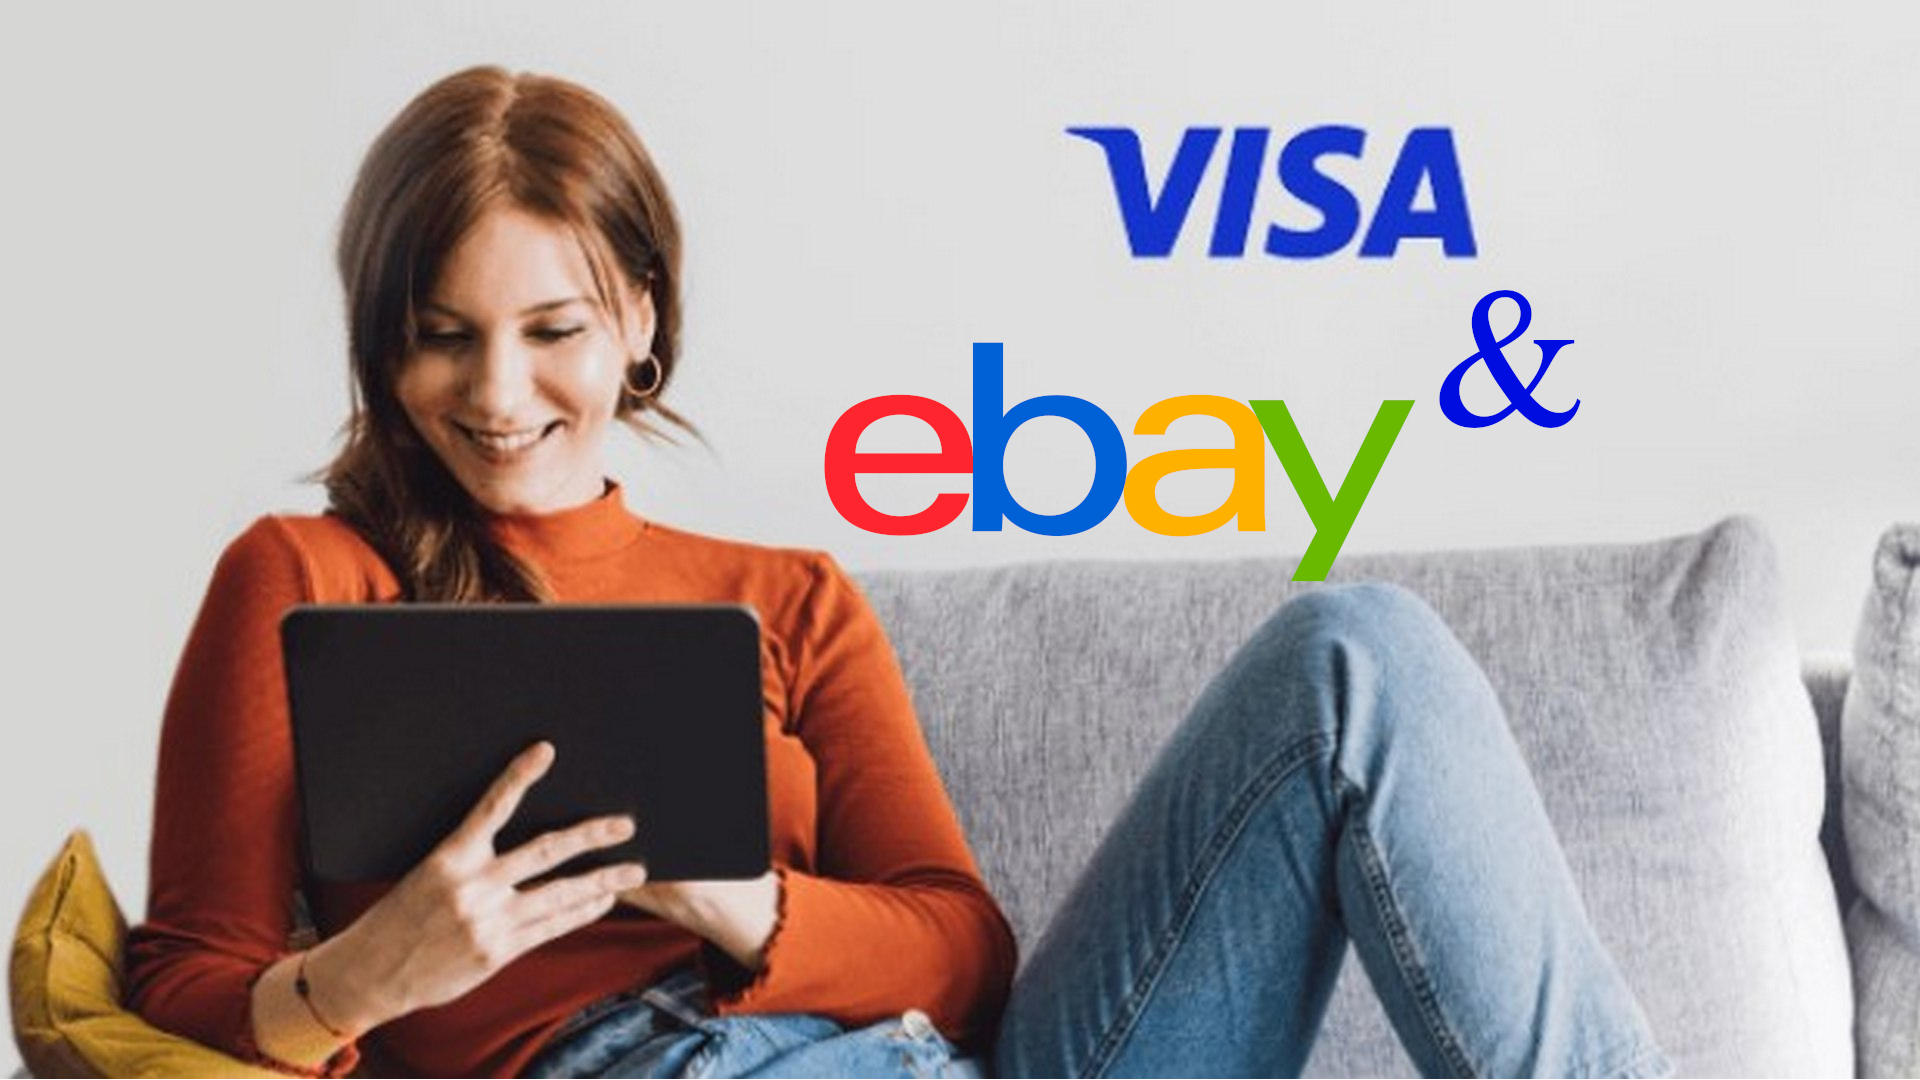 promozione carta visa codice sconto ebay offerta